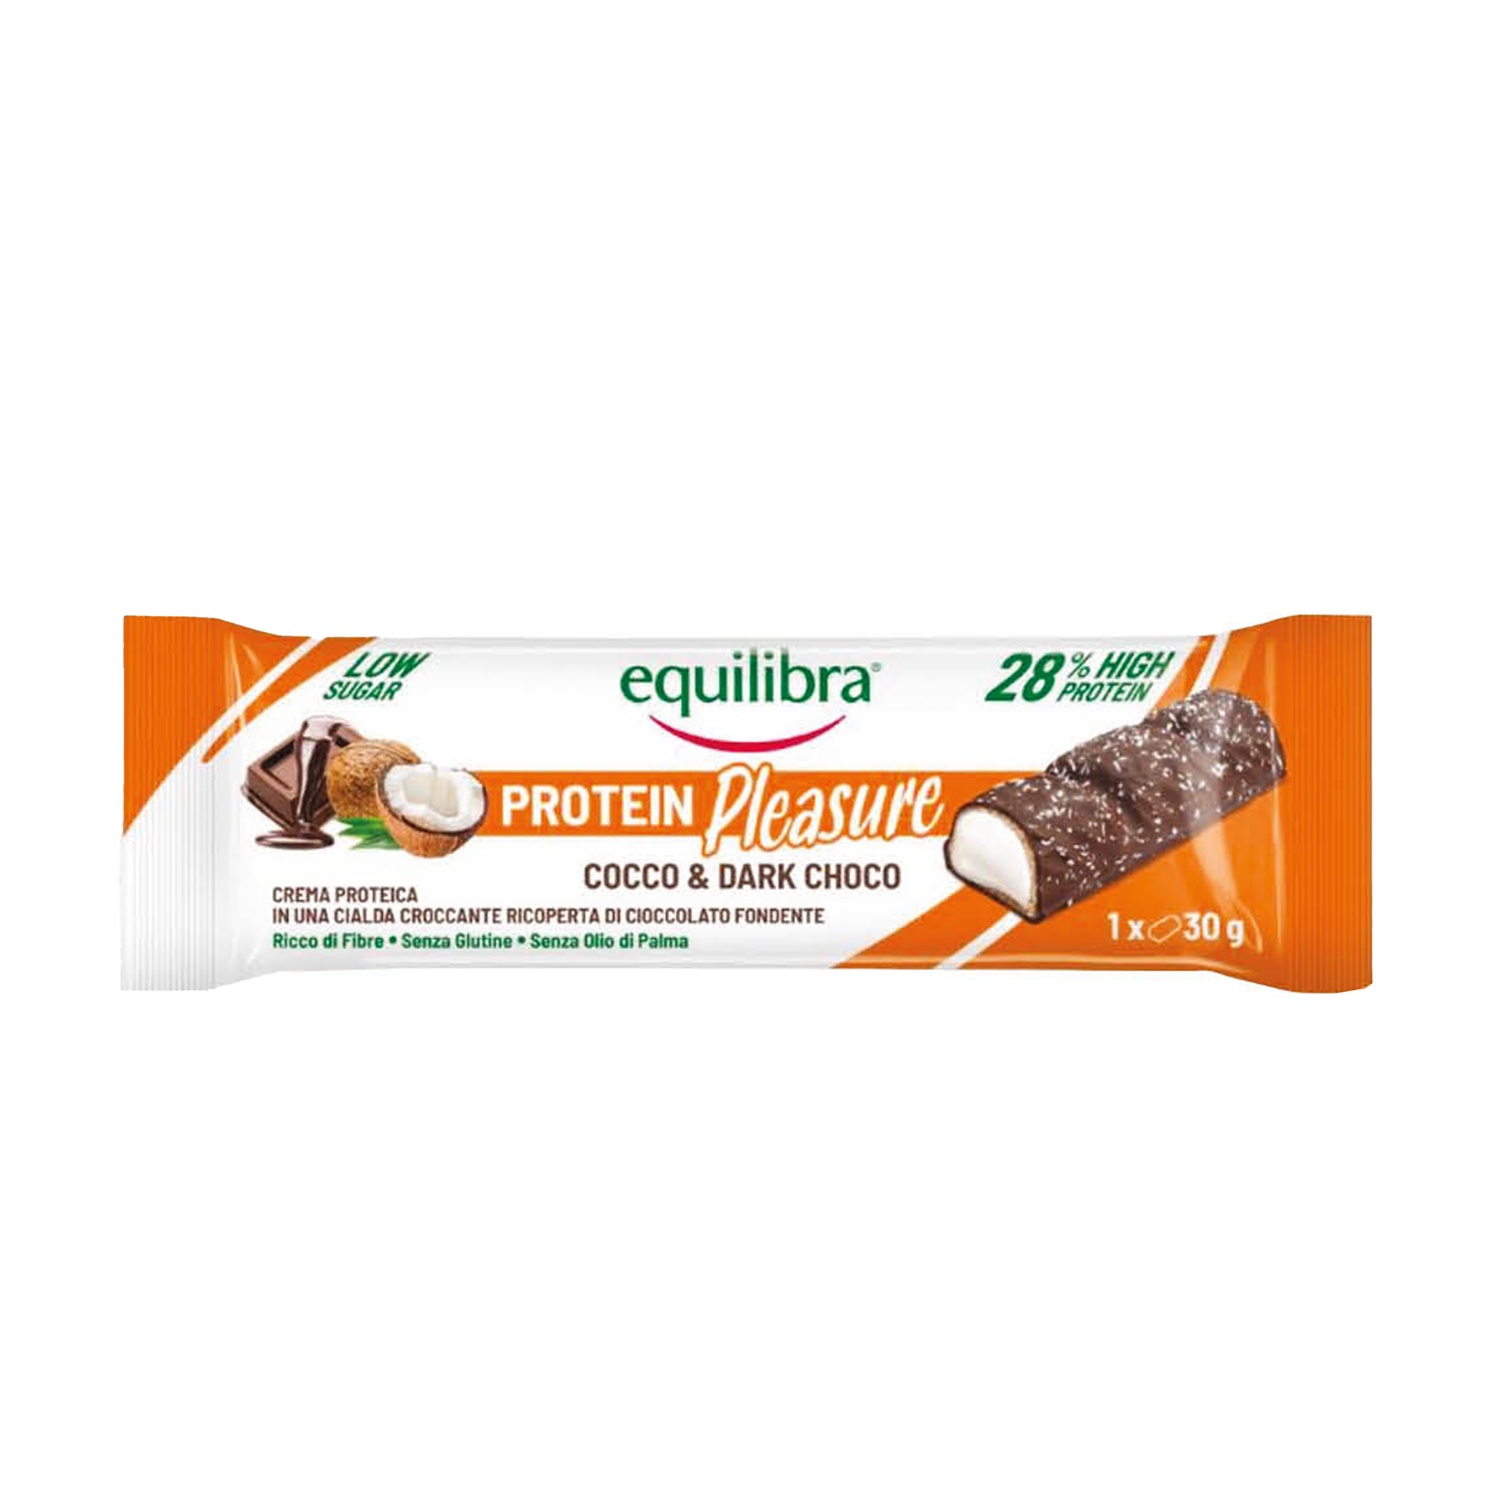 EQUILIBRA Protein Pleasure Barretta con cocco e cioccolato fondente